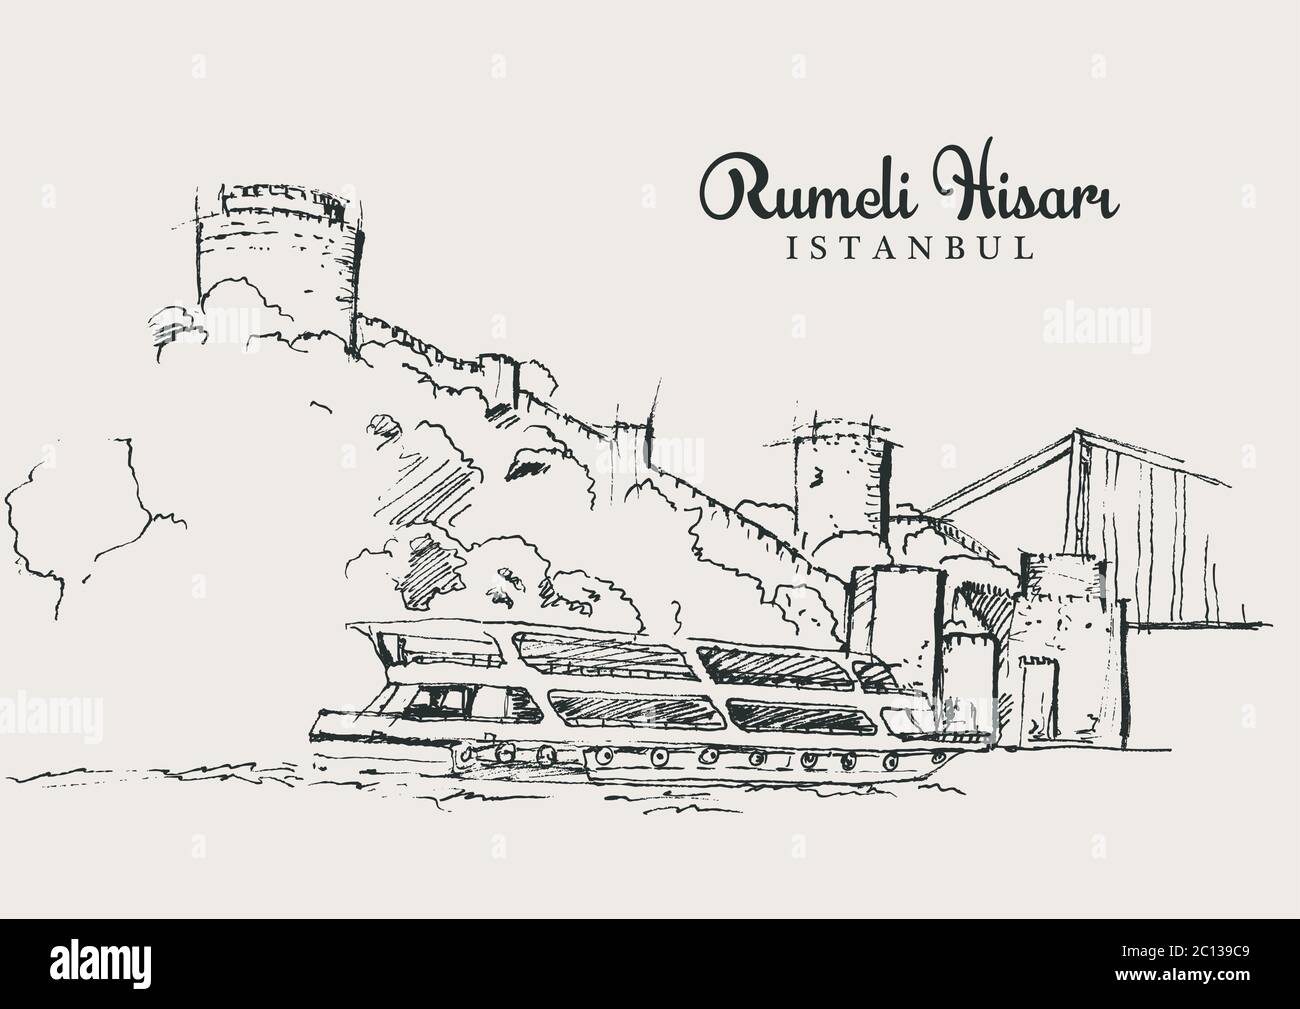 Disegno illustrazione di Rumeli Hisari, il castello di Roumelian e FSM (Fatih Sultan Mehmet) Ponte a Istanbul Illustrazione Vettoriale